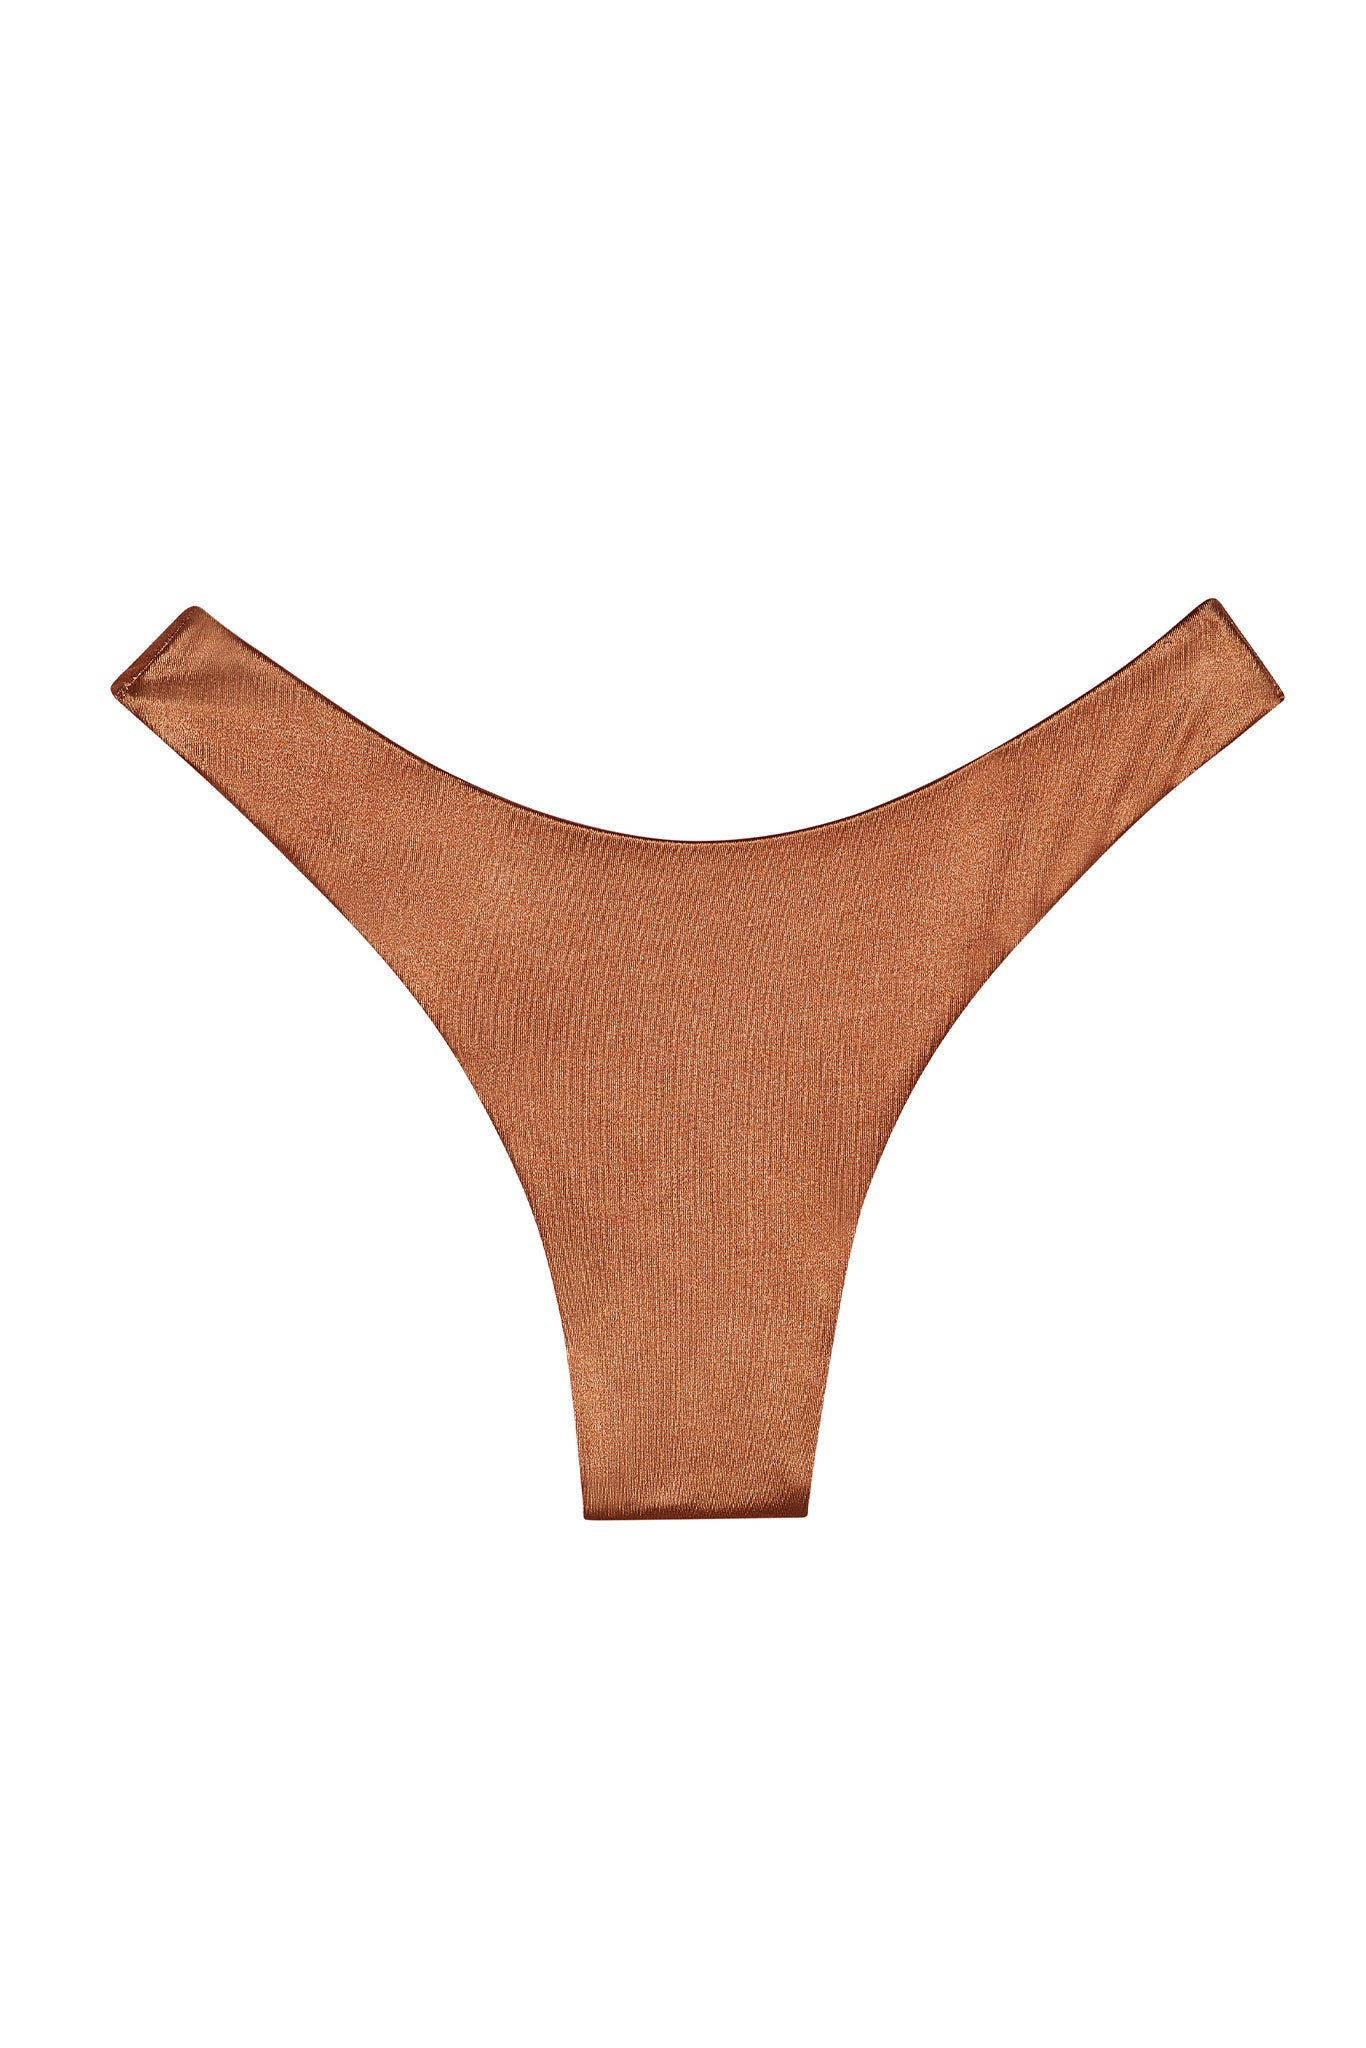 Clovelly Top - Bronze Shiny Jersey – Monday Swimwear